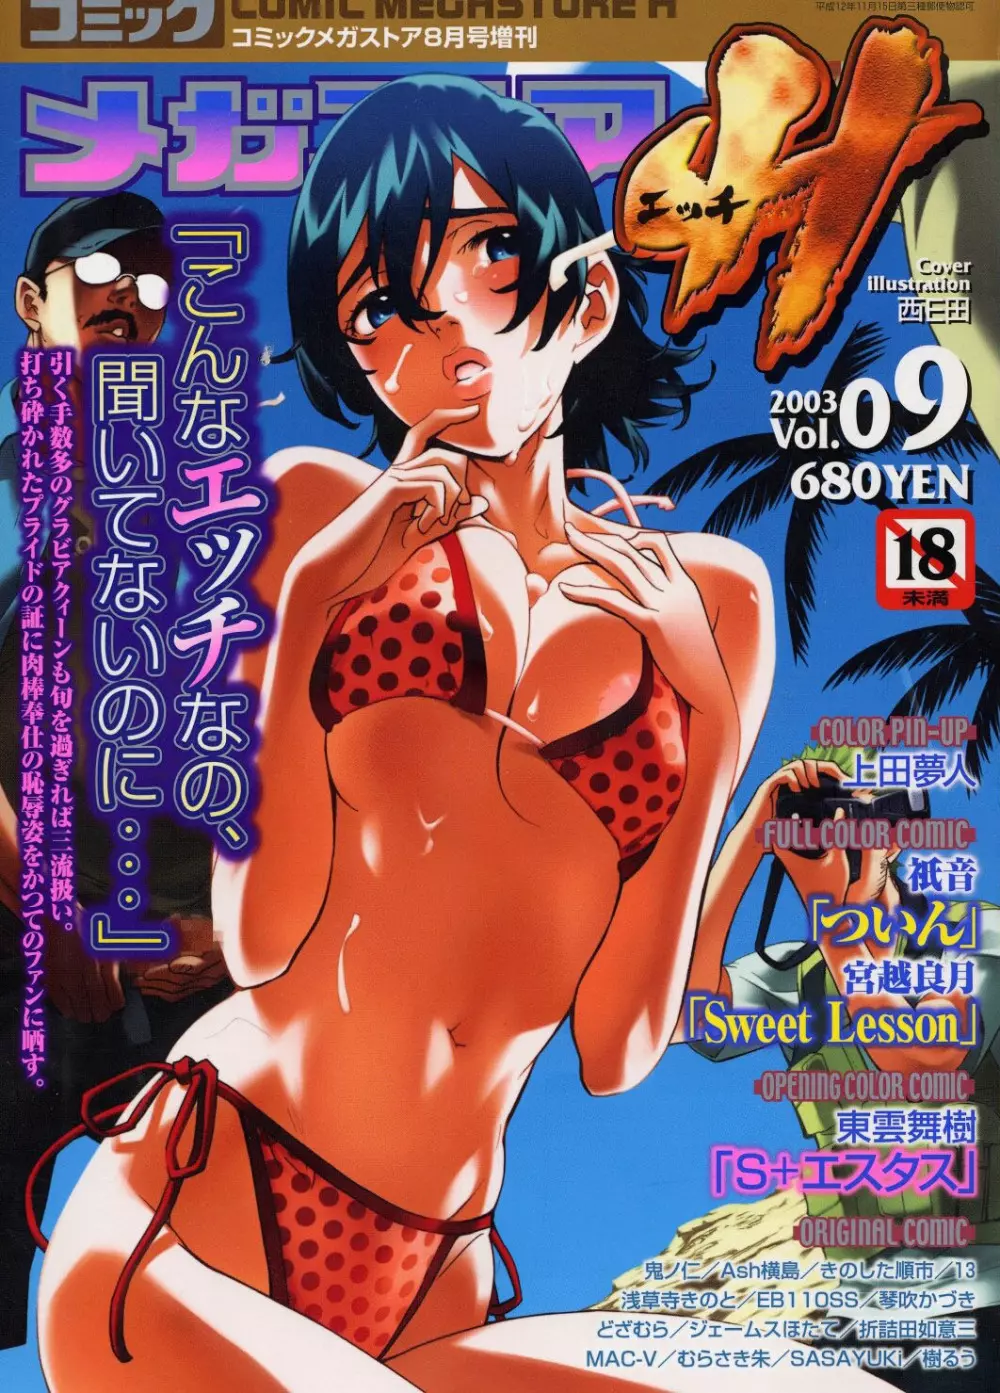 非公開: コミックメガストアH 2003年8月号